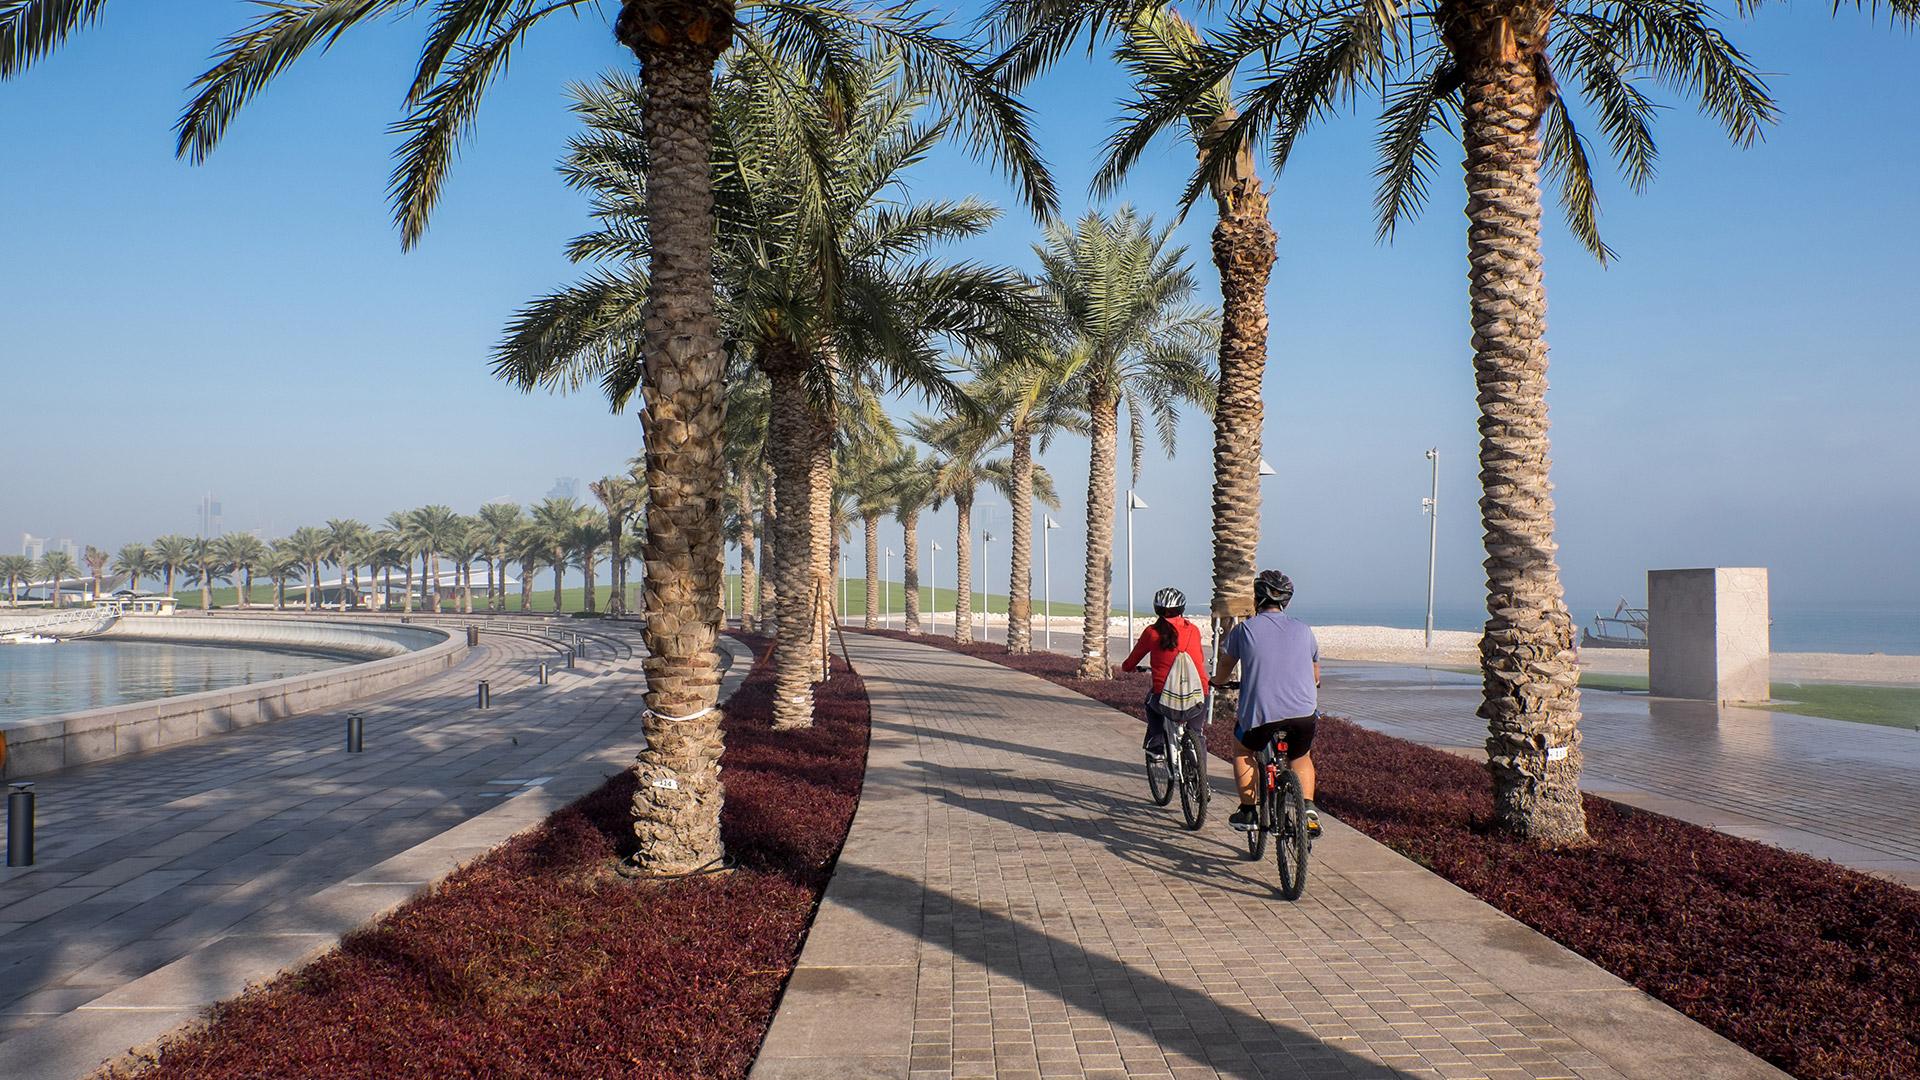 How to Get to Banyan Tree Doha Qatar